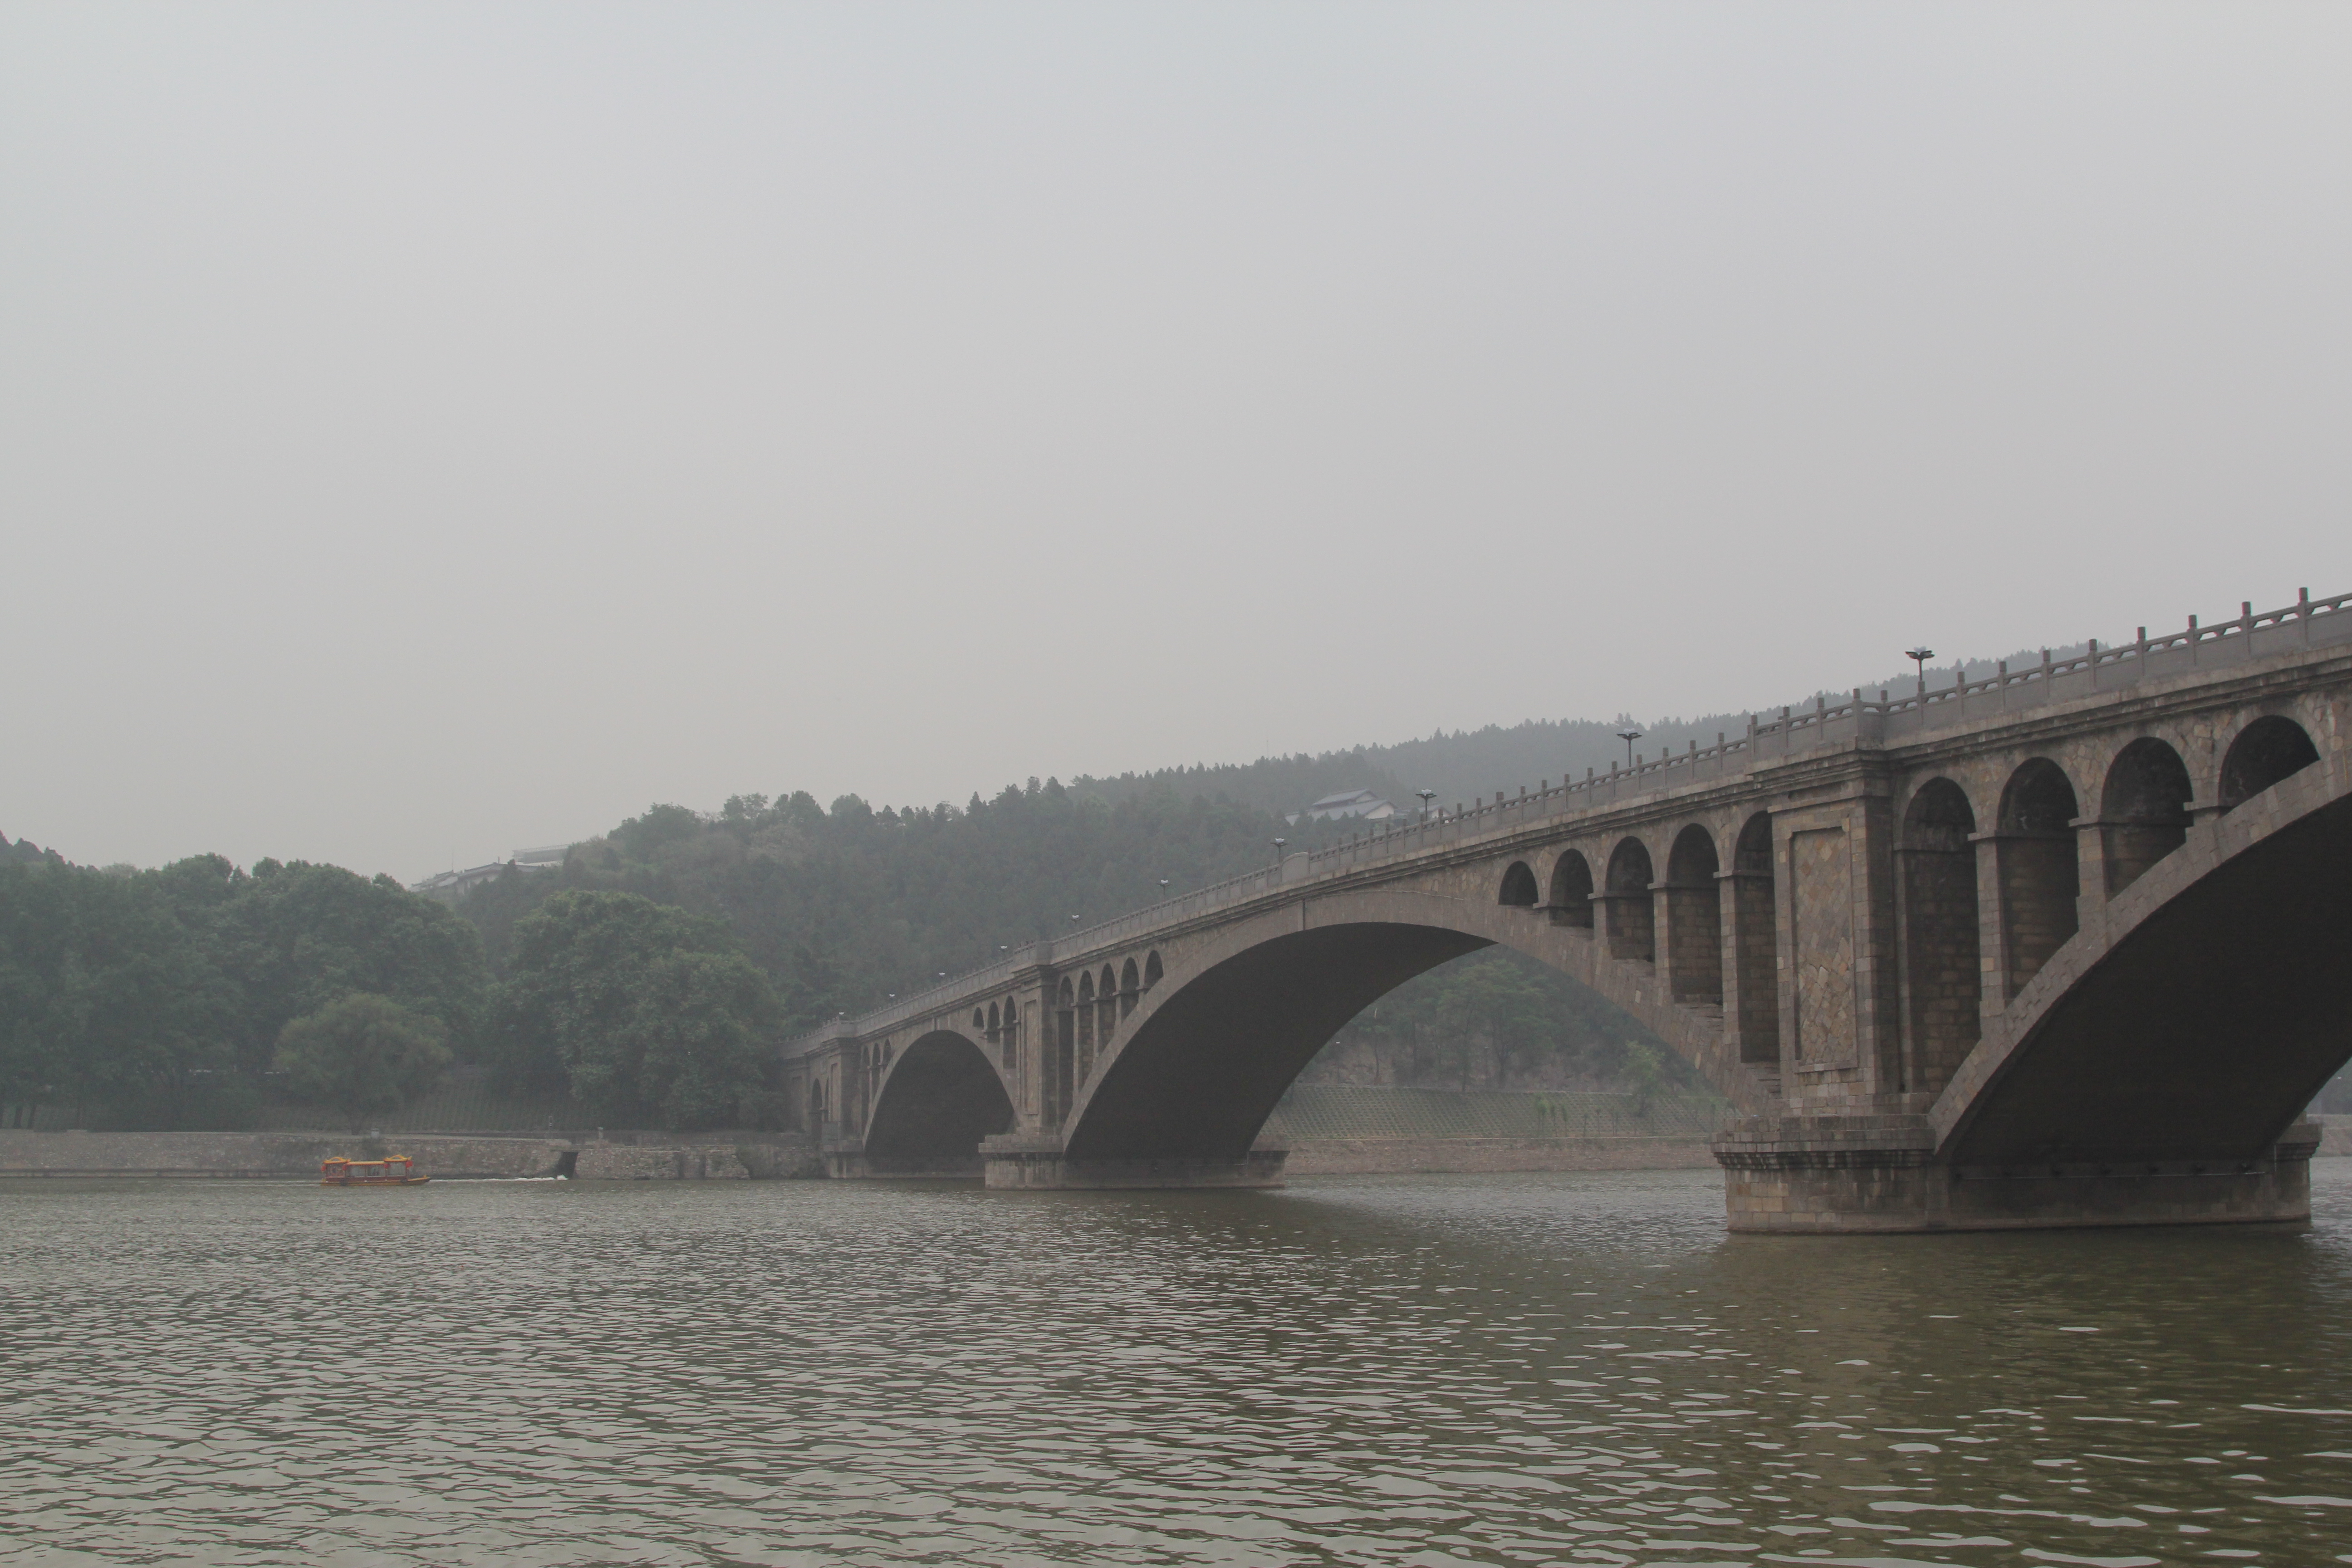 巫山龙门桥图片